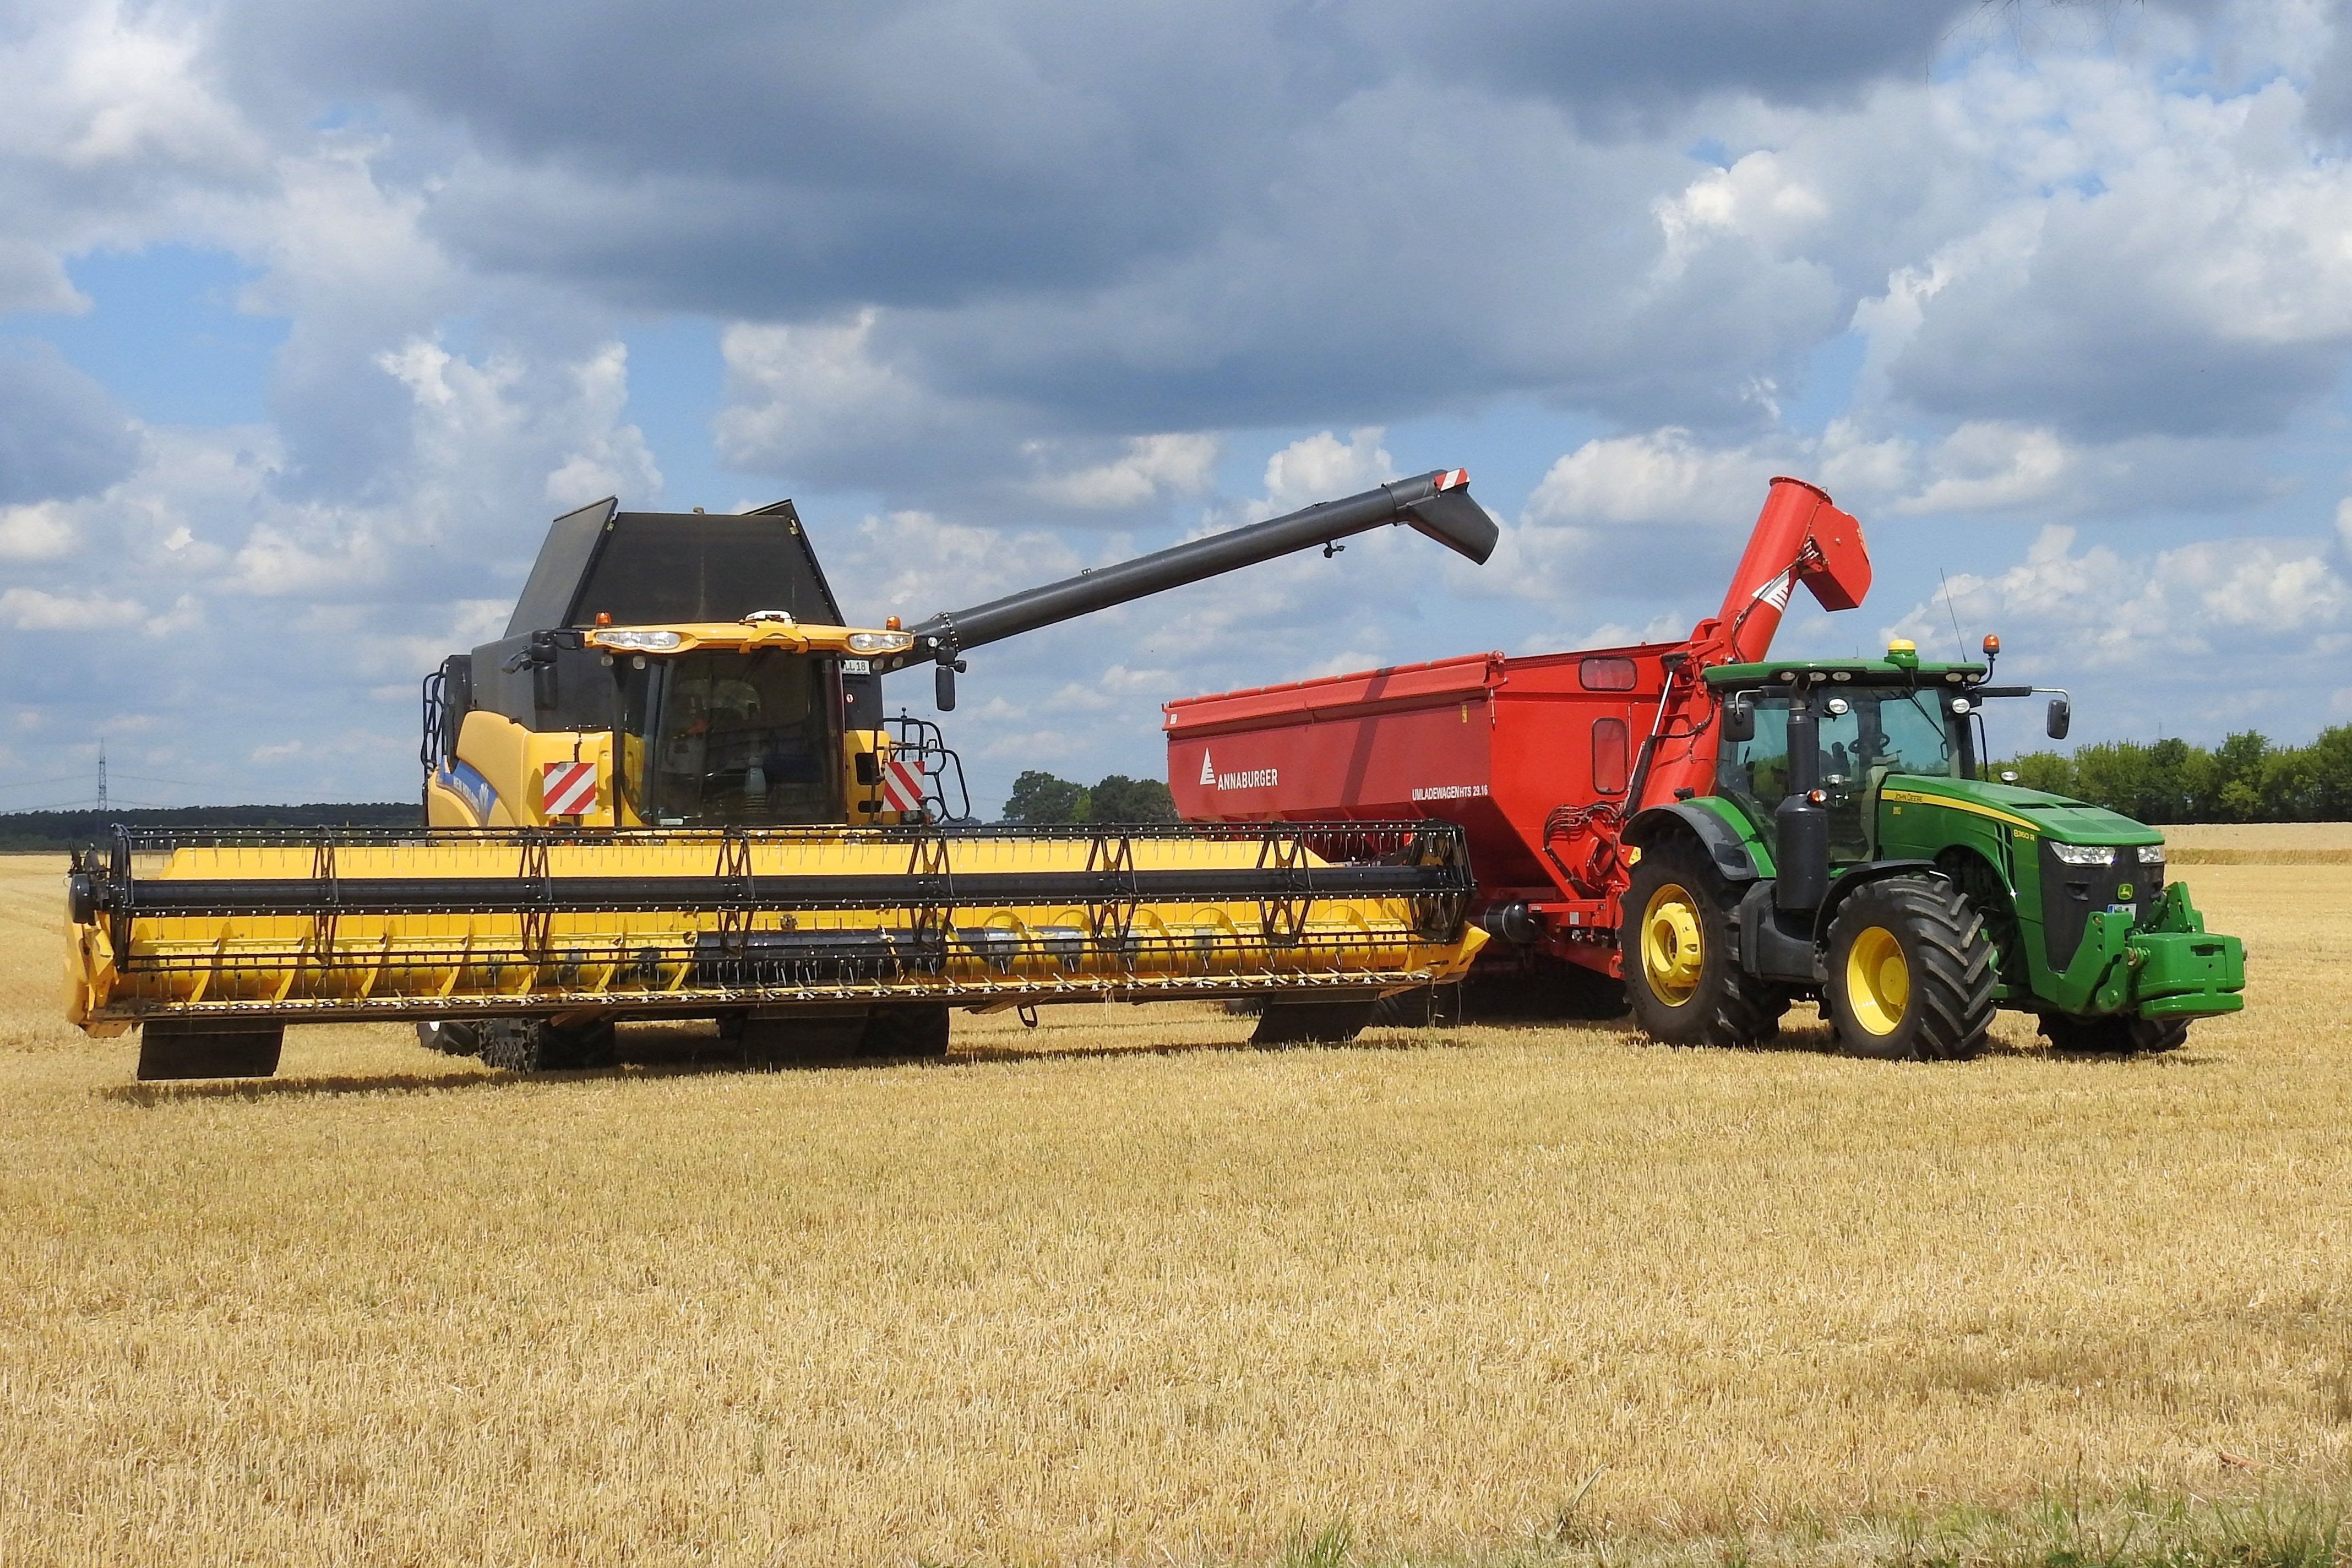 Combine Harvester, Harvester, combine harvester, field